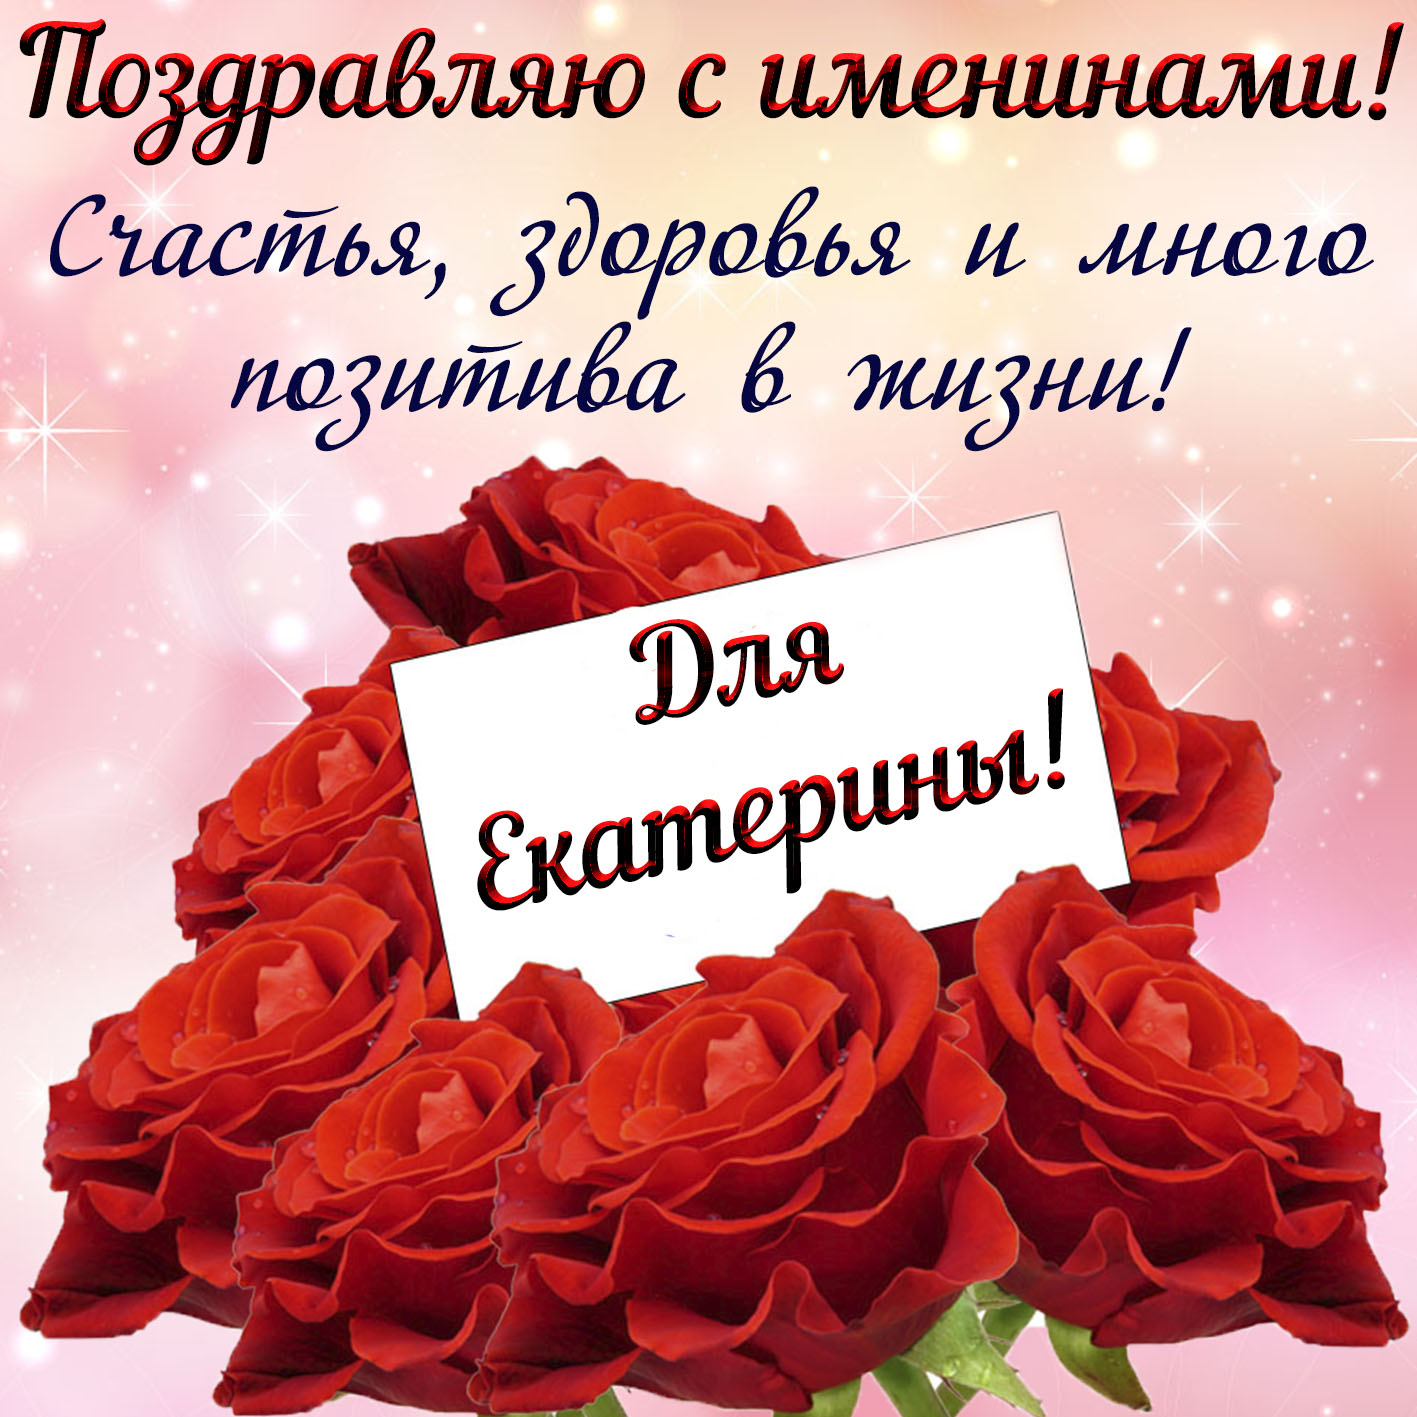 Поздравления с Днем ангела Екатерины: картинки и открытки (на украинском)